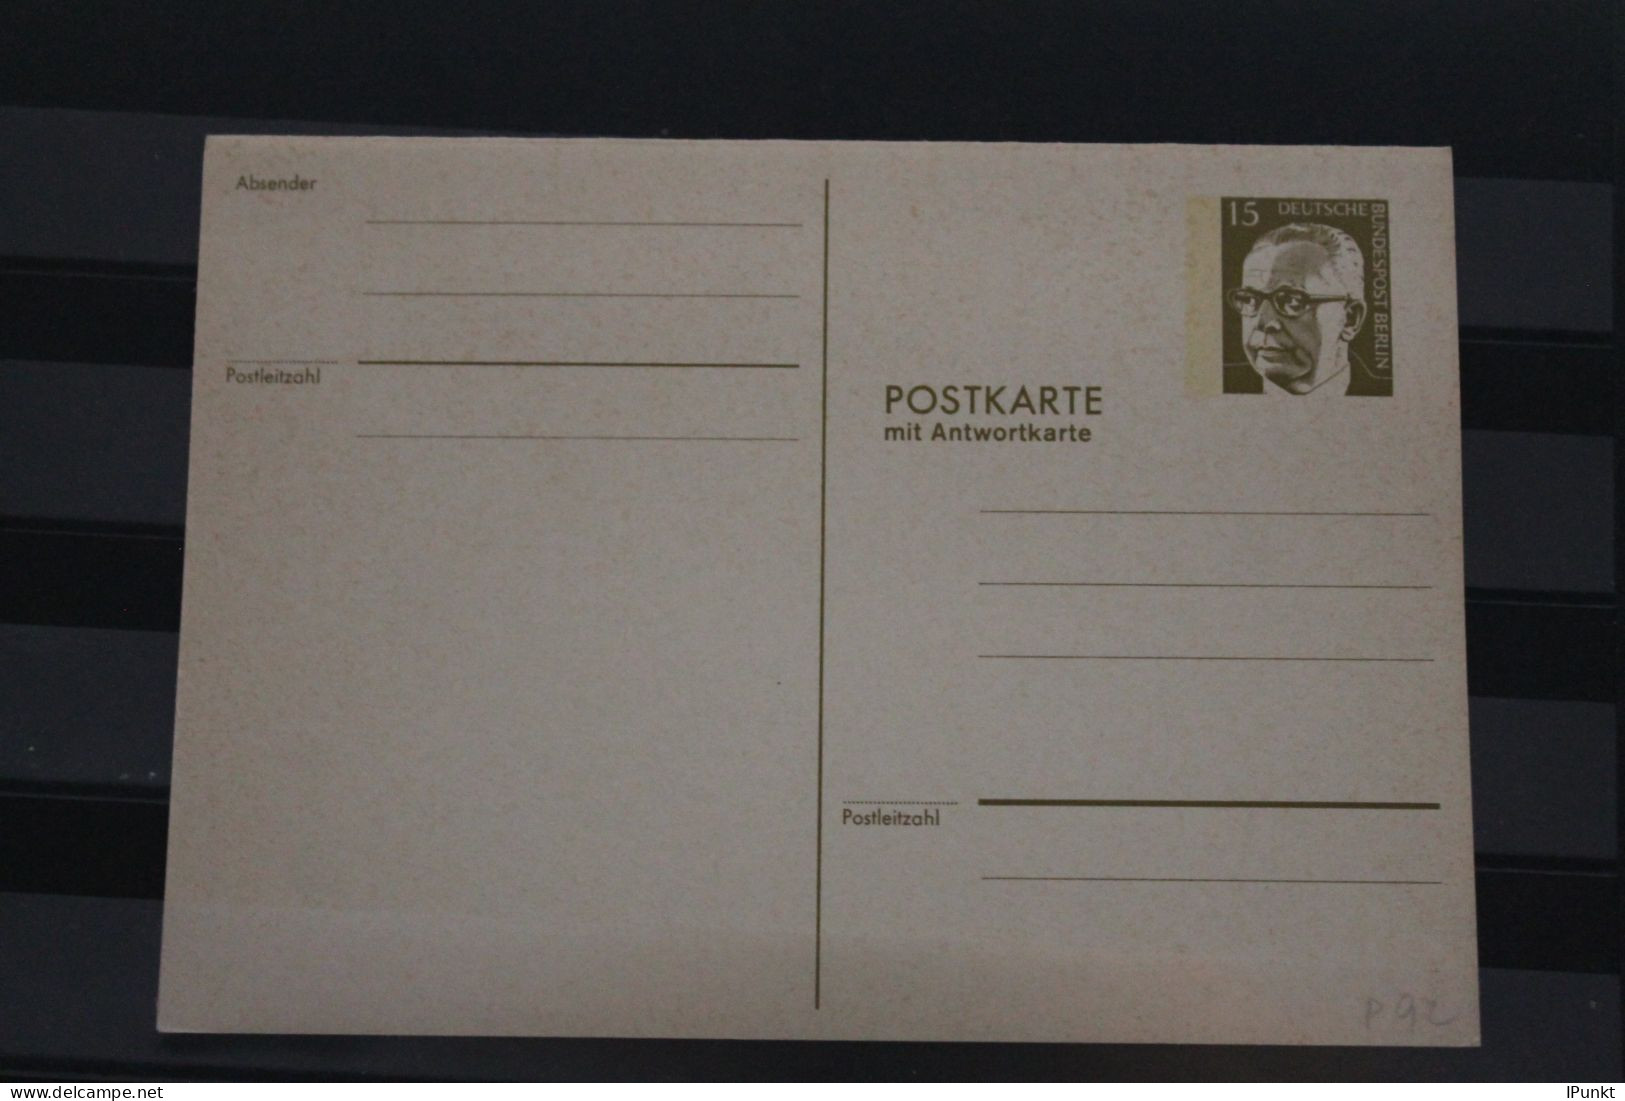 Berlin 1973; Ganzsache G. Heinemann Postkarte Mit Antwortkarte  P 92; Ungebraucht - Postcards - Mint